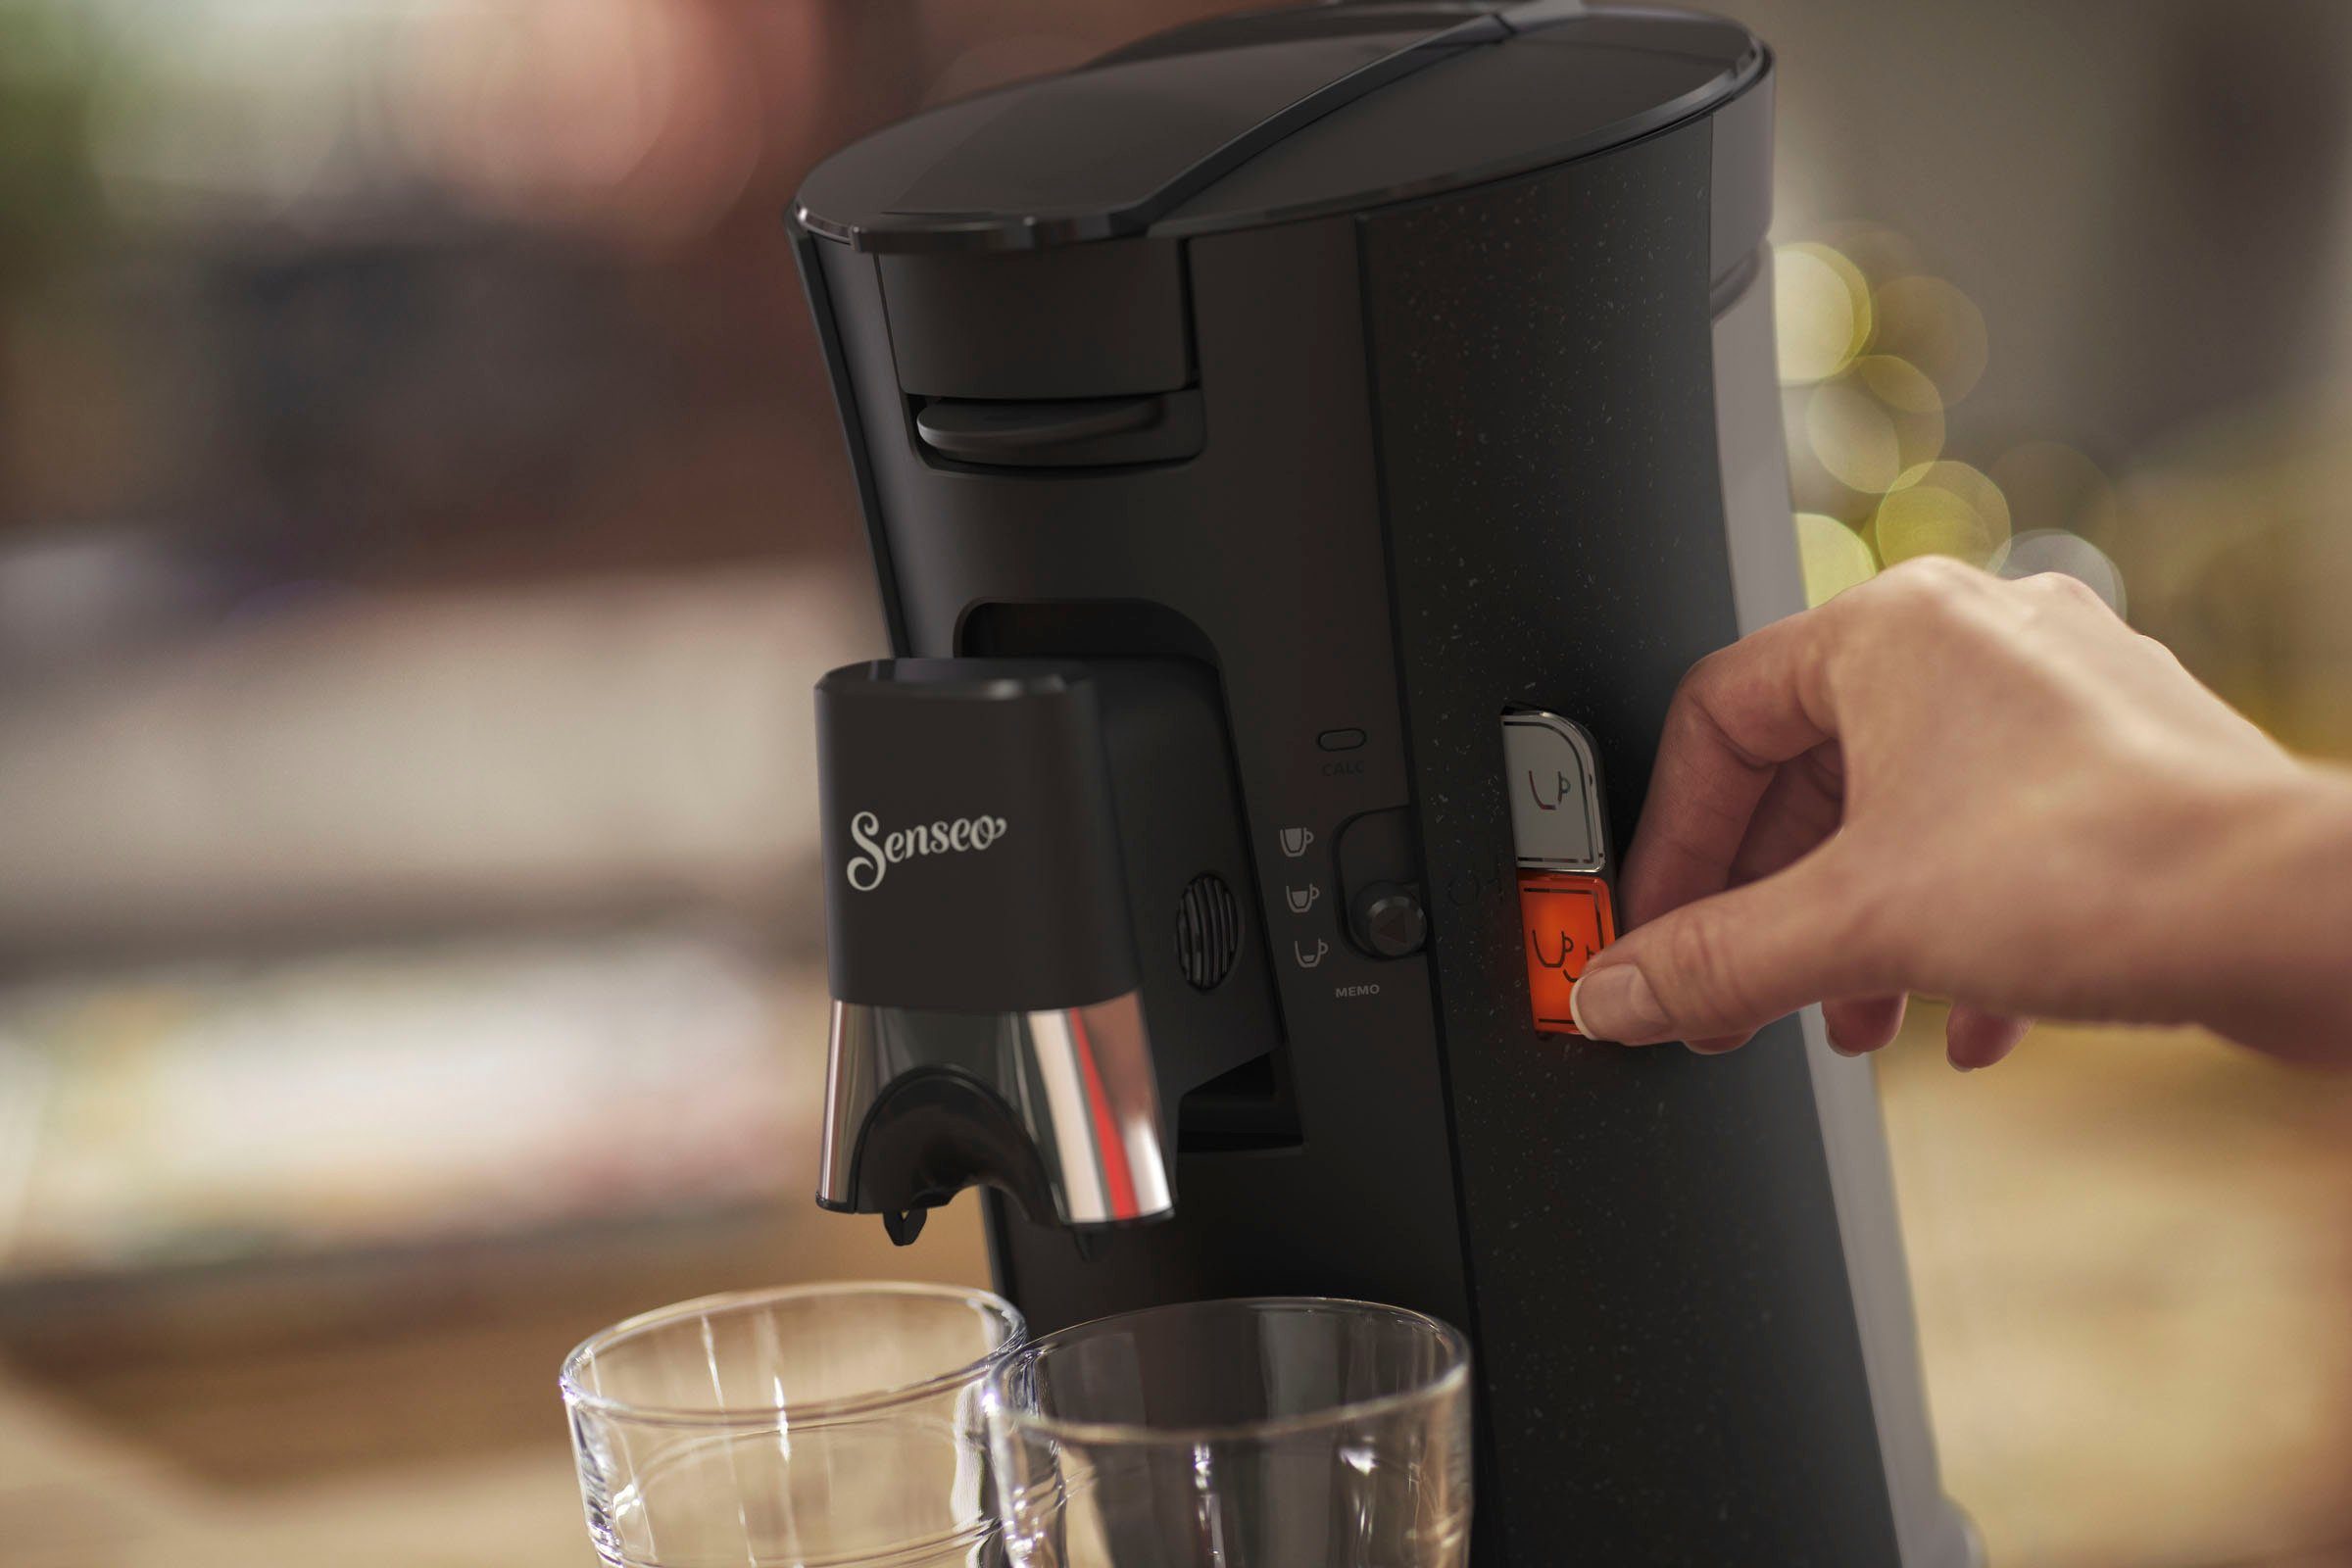 Kaffeespezialitäten, Memo-Funktion, Kaffeepadmaschine Philips Senseo Gratis-Zugaben +3 Select ECO CSA240/20, (Wert €14,-UVP) 37% aus recyceltem Plastik,